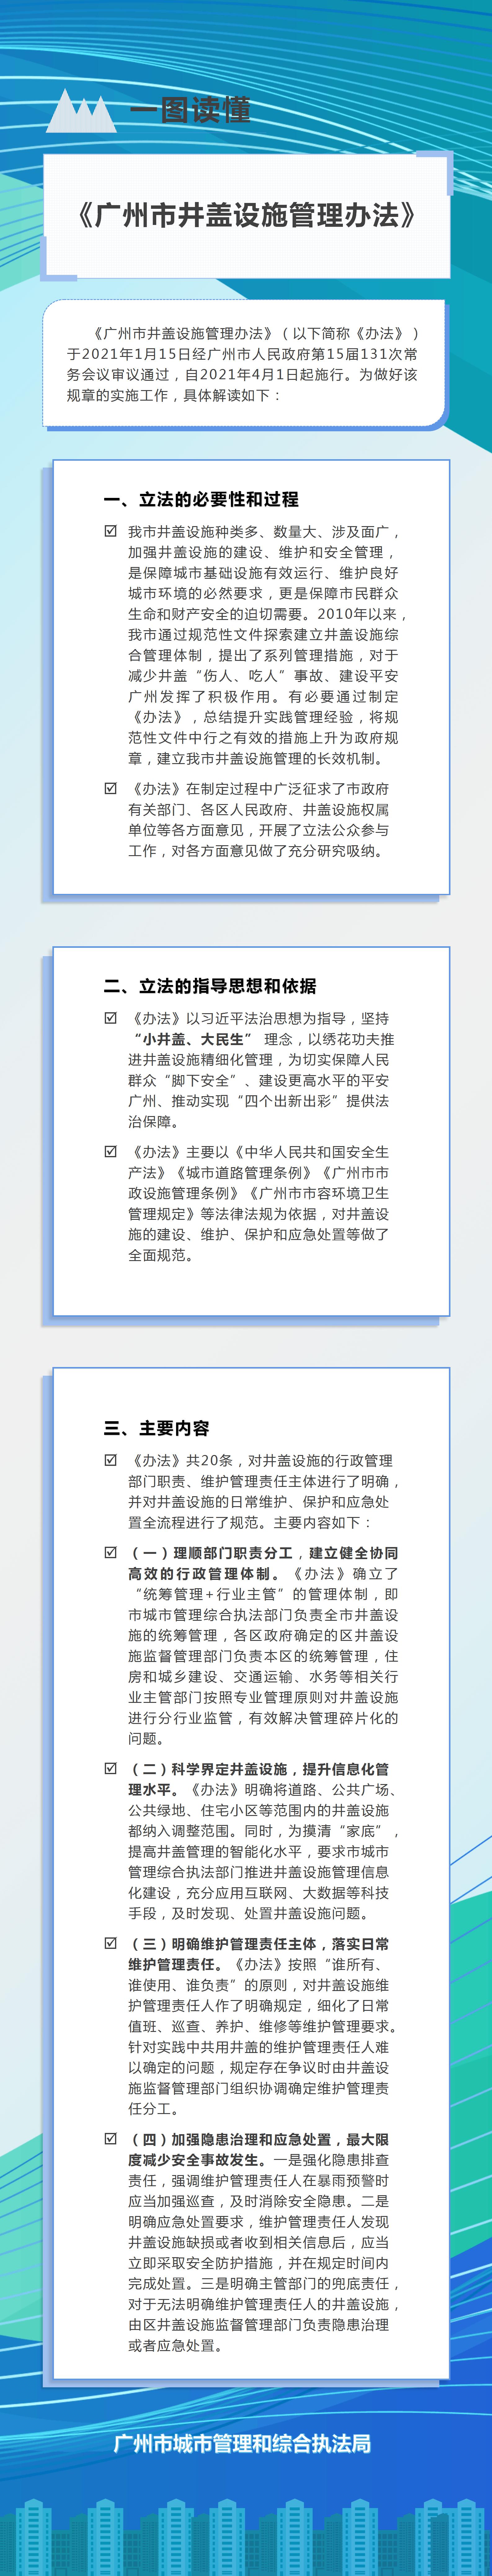 【图文解读】《广州市井盖设施管理办法》解读.jpg